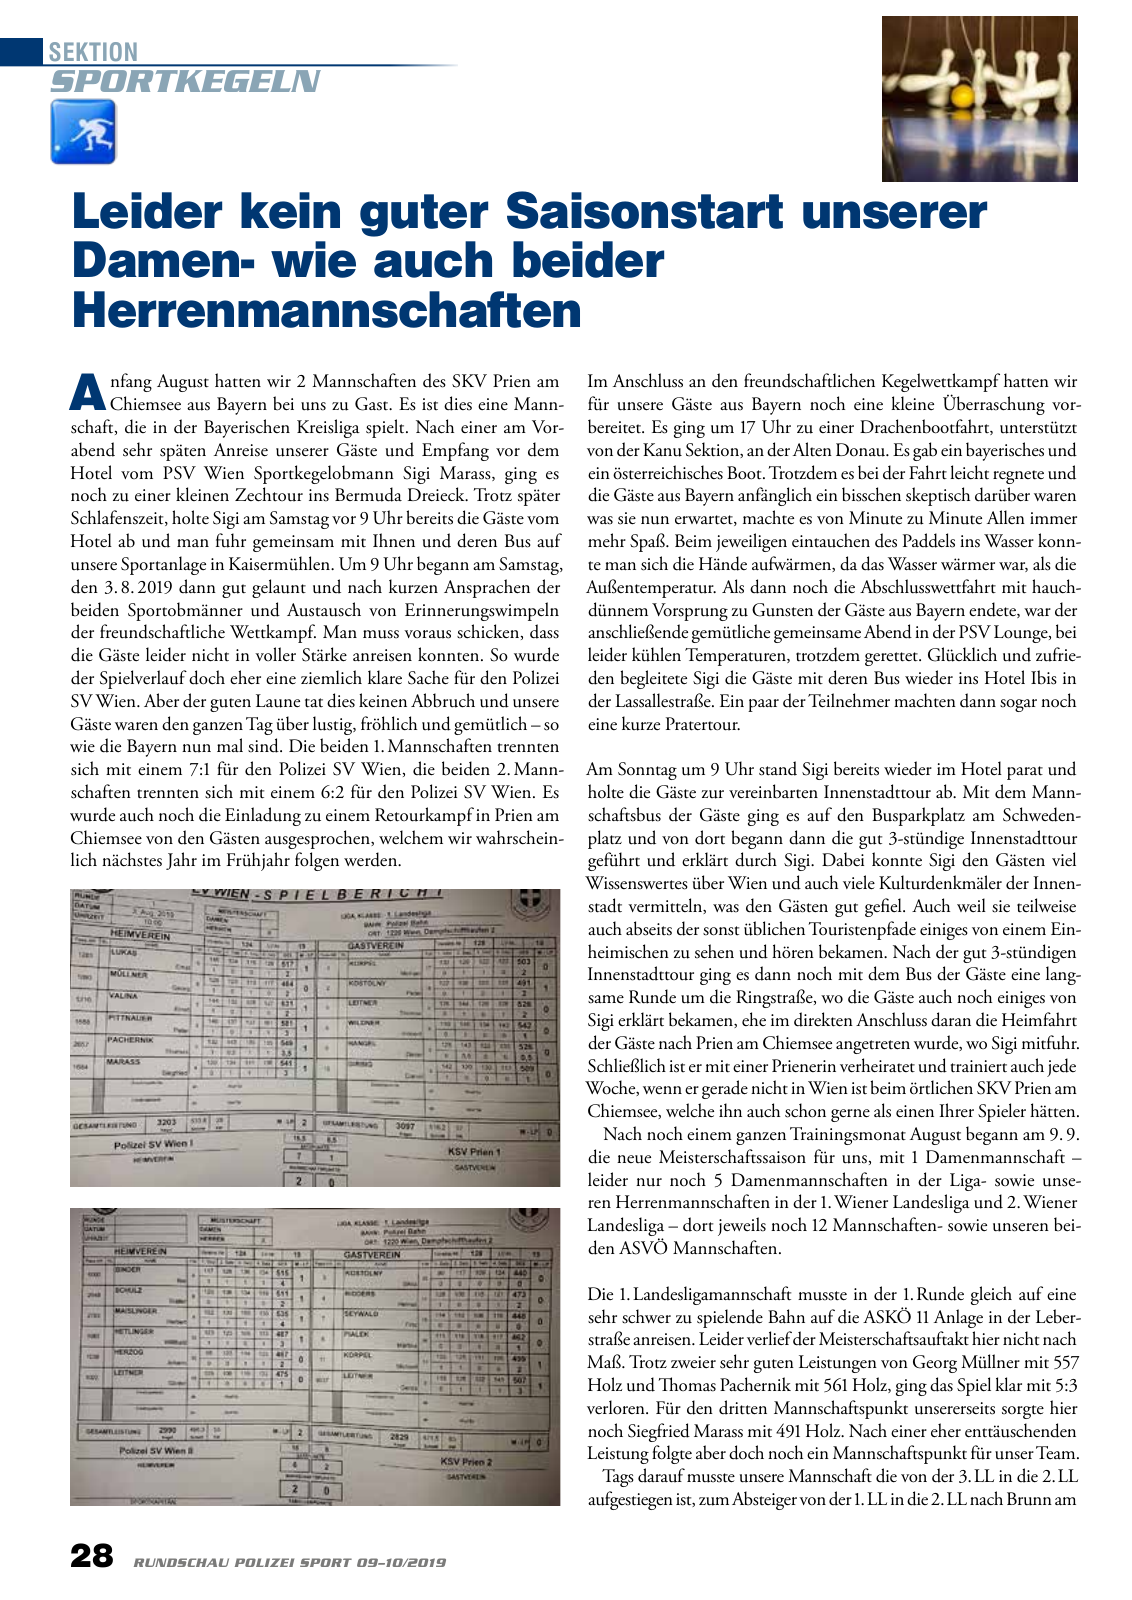 Vorschau Rundschau Polizei Sport 09-10/2019 Seite 28